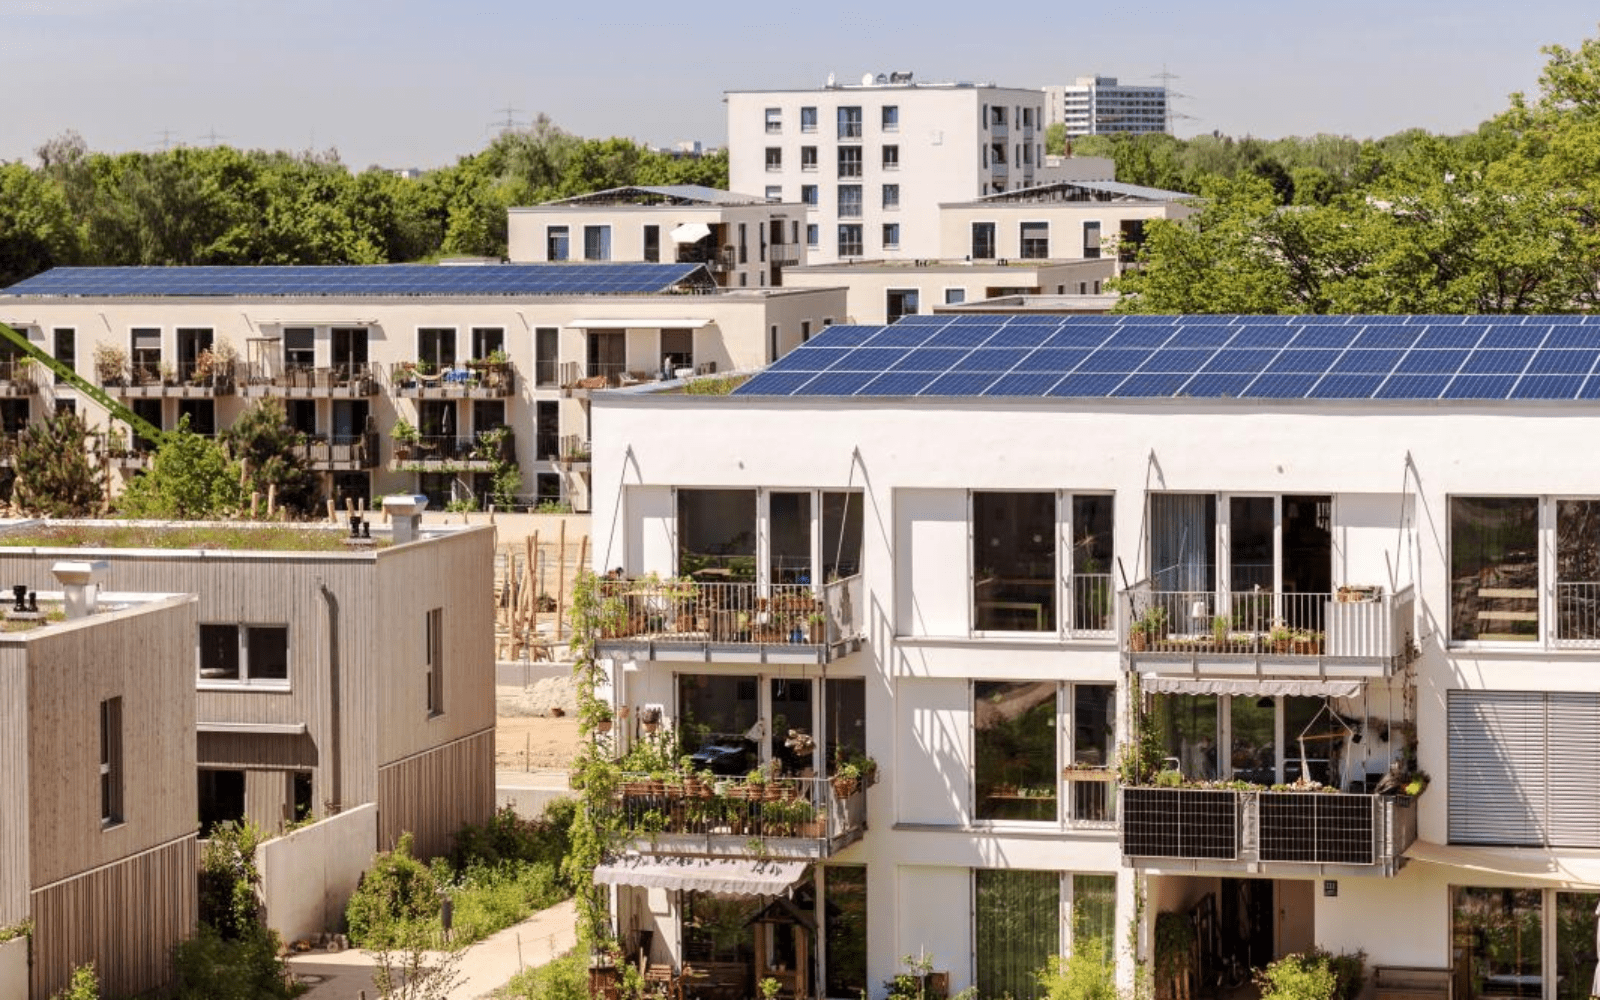 Zasad ne postoji niti jedna zgrada u Hrvatskoj čiji su stanari uspjeli instalirati solarnu elektranu